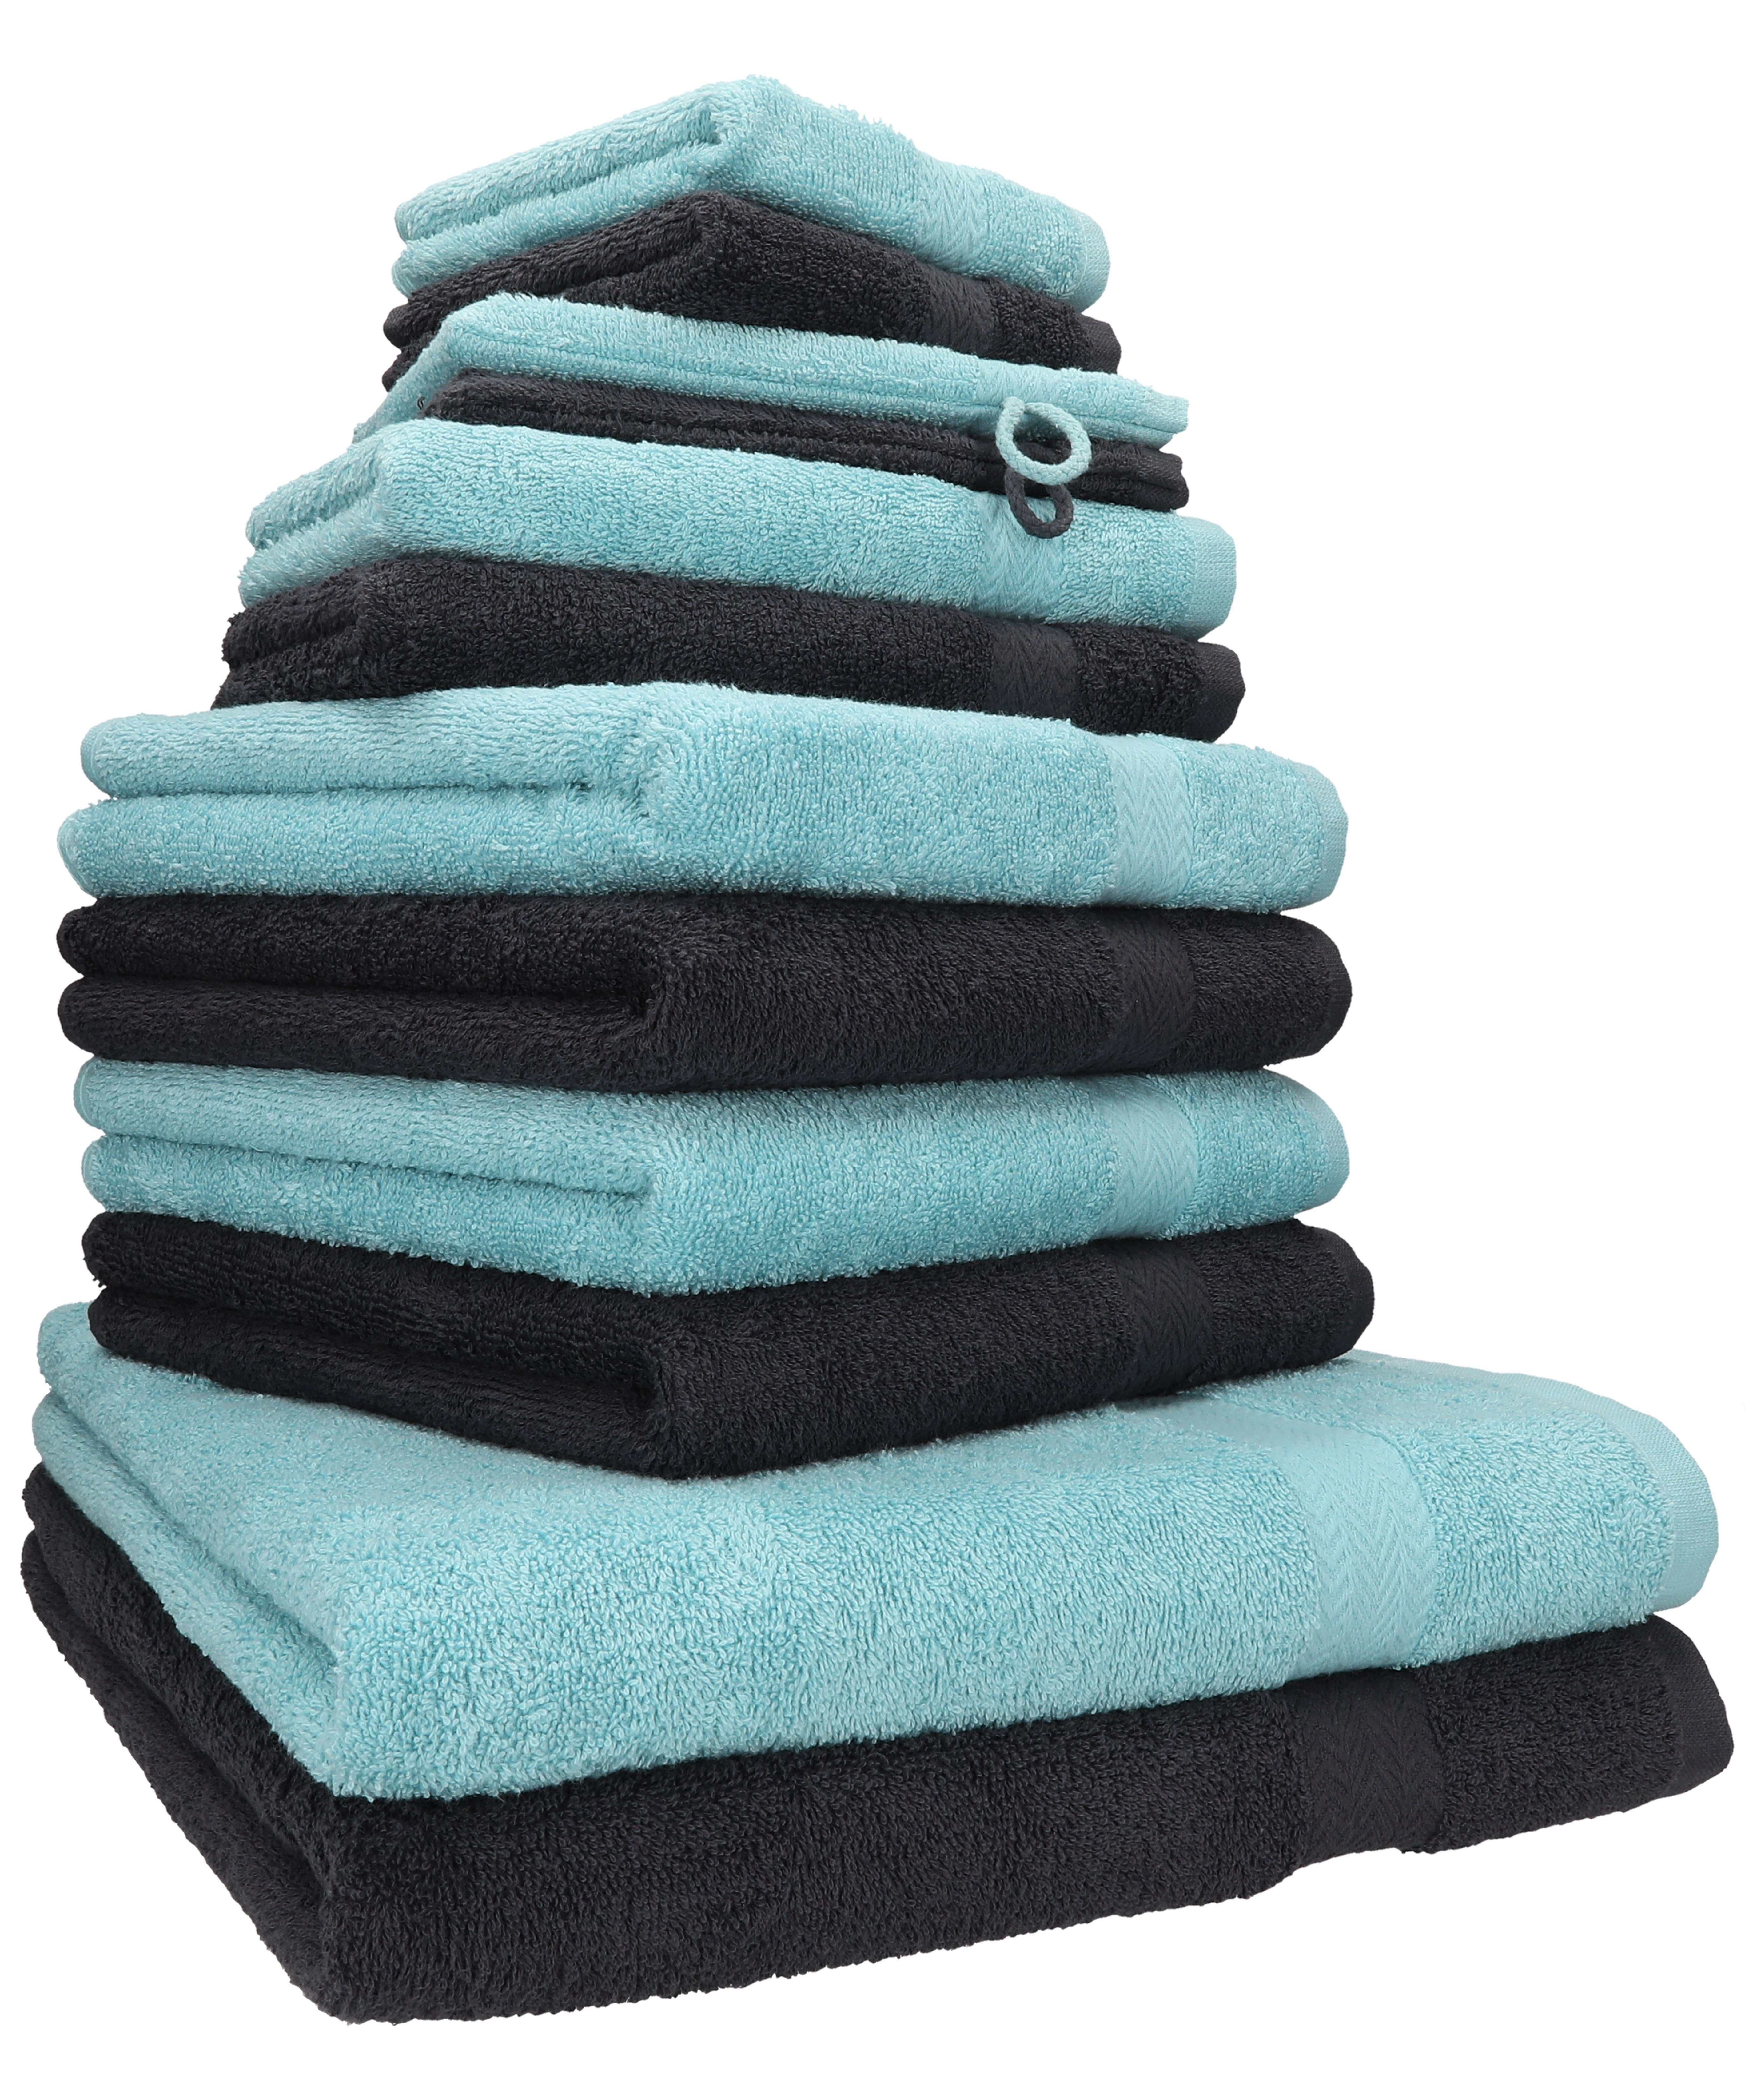 Betz Handtuch Set 12-TLG. Handtuch Set Premium Farbe Graphit/Ocean, 100% Baumwolle, (12-tlg)